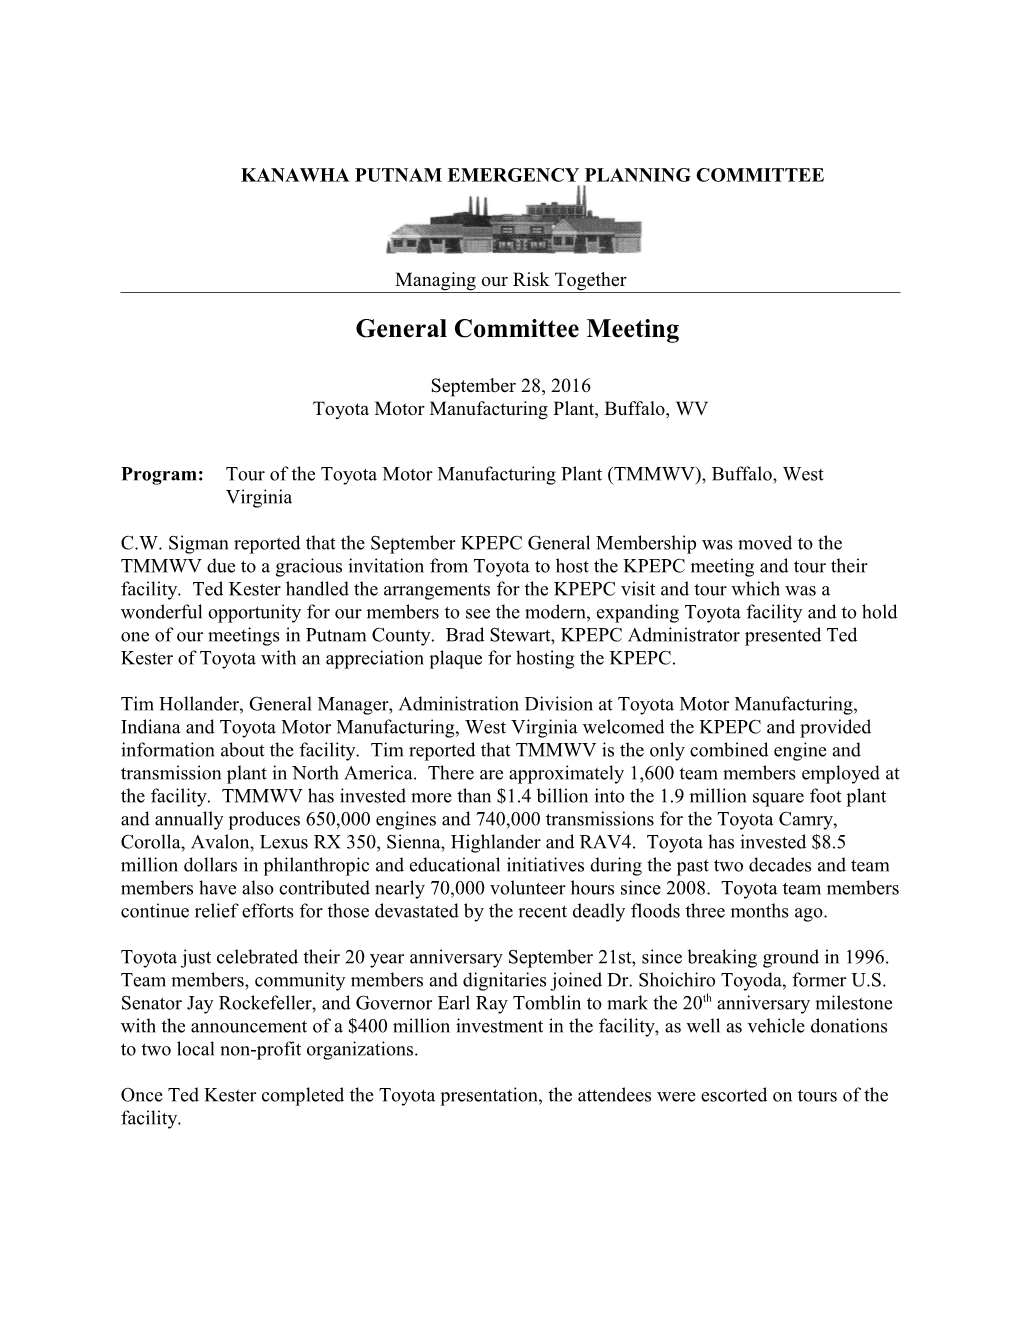 General Committee Meeting